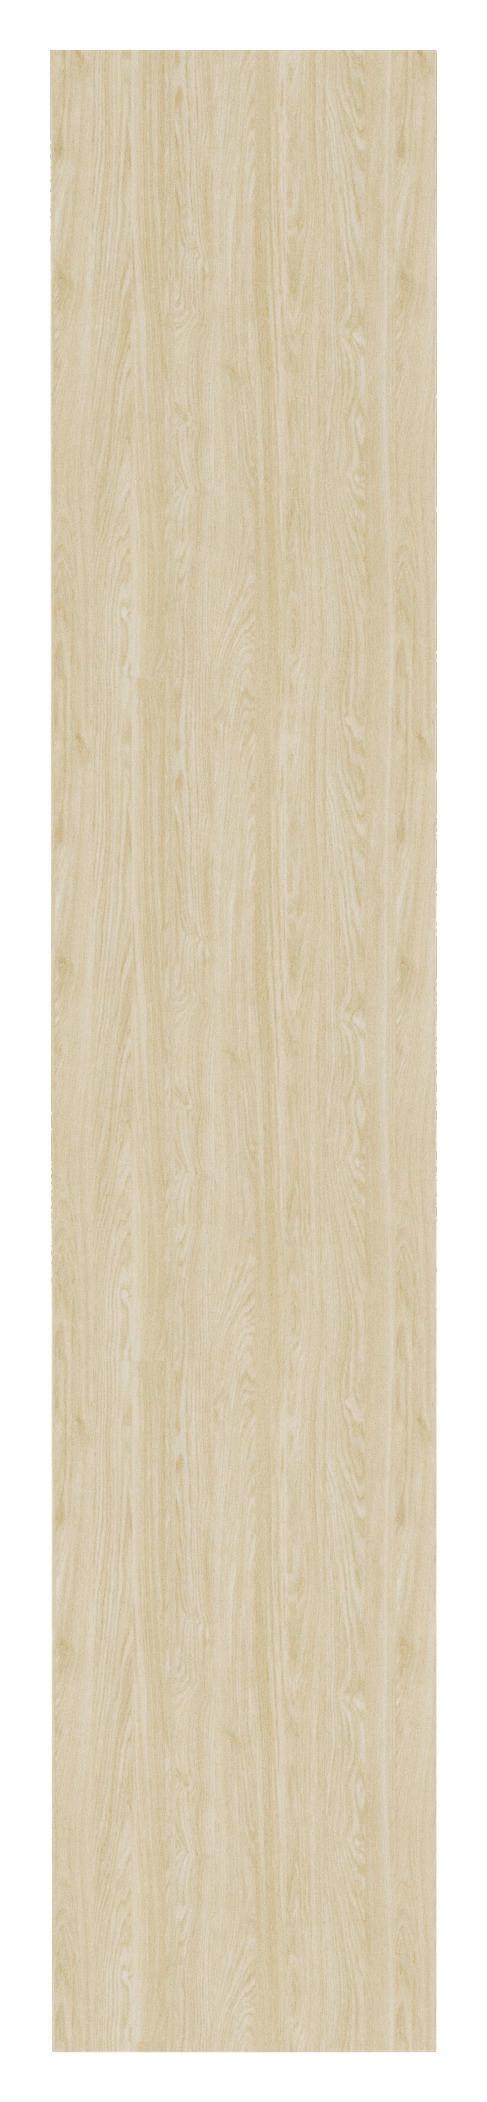 Dvere Unit - farby duba, Moderný, kompozitné drevo (45,3/232,6/1,8cm) - Ondega